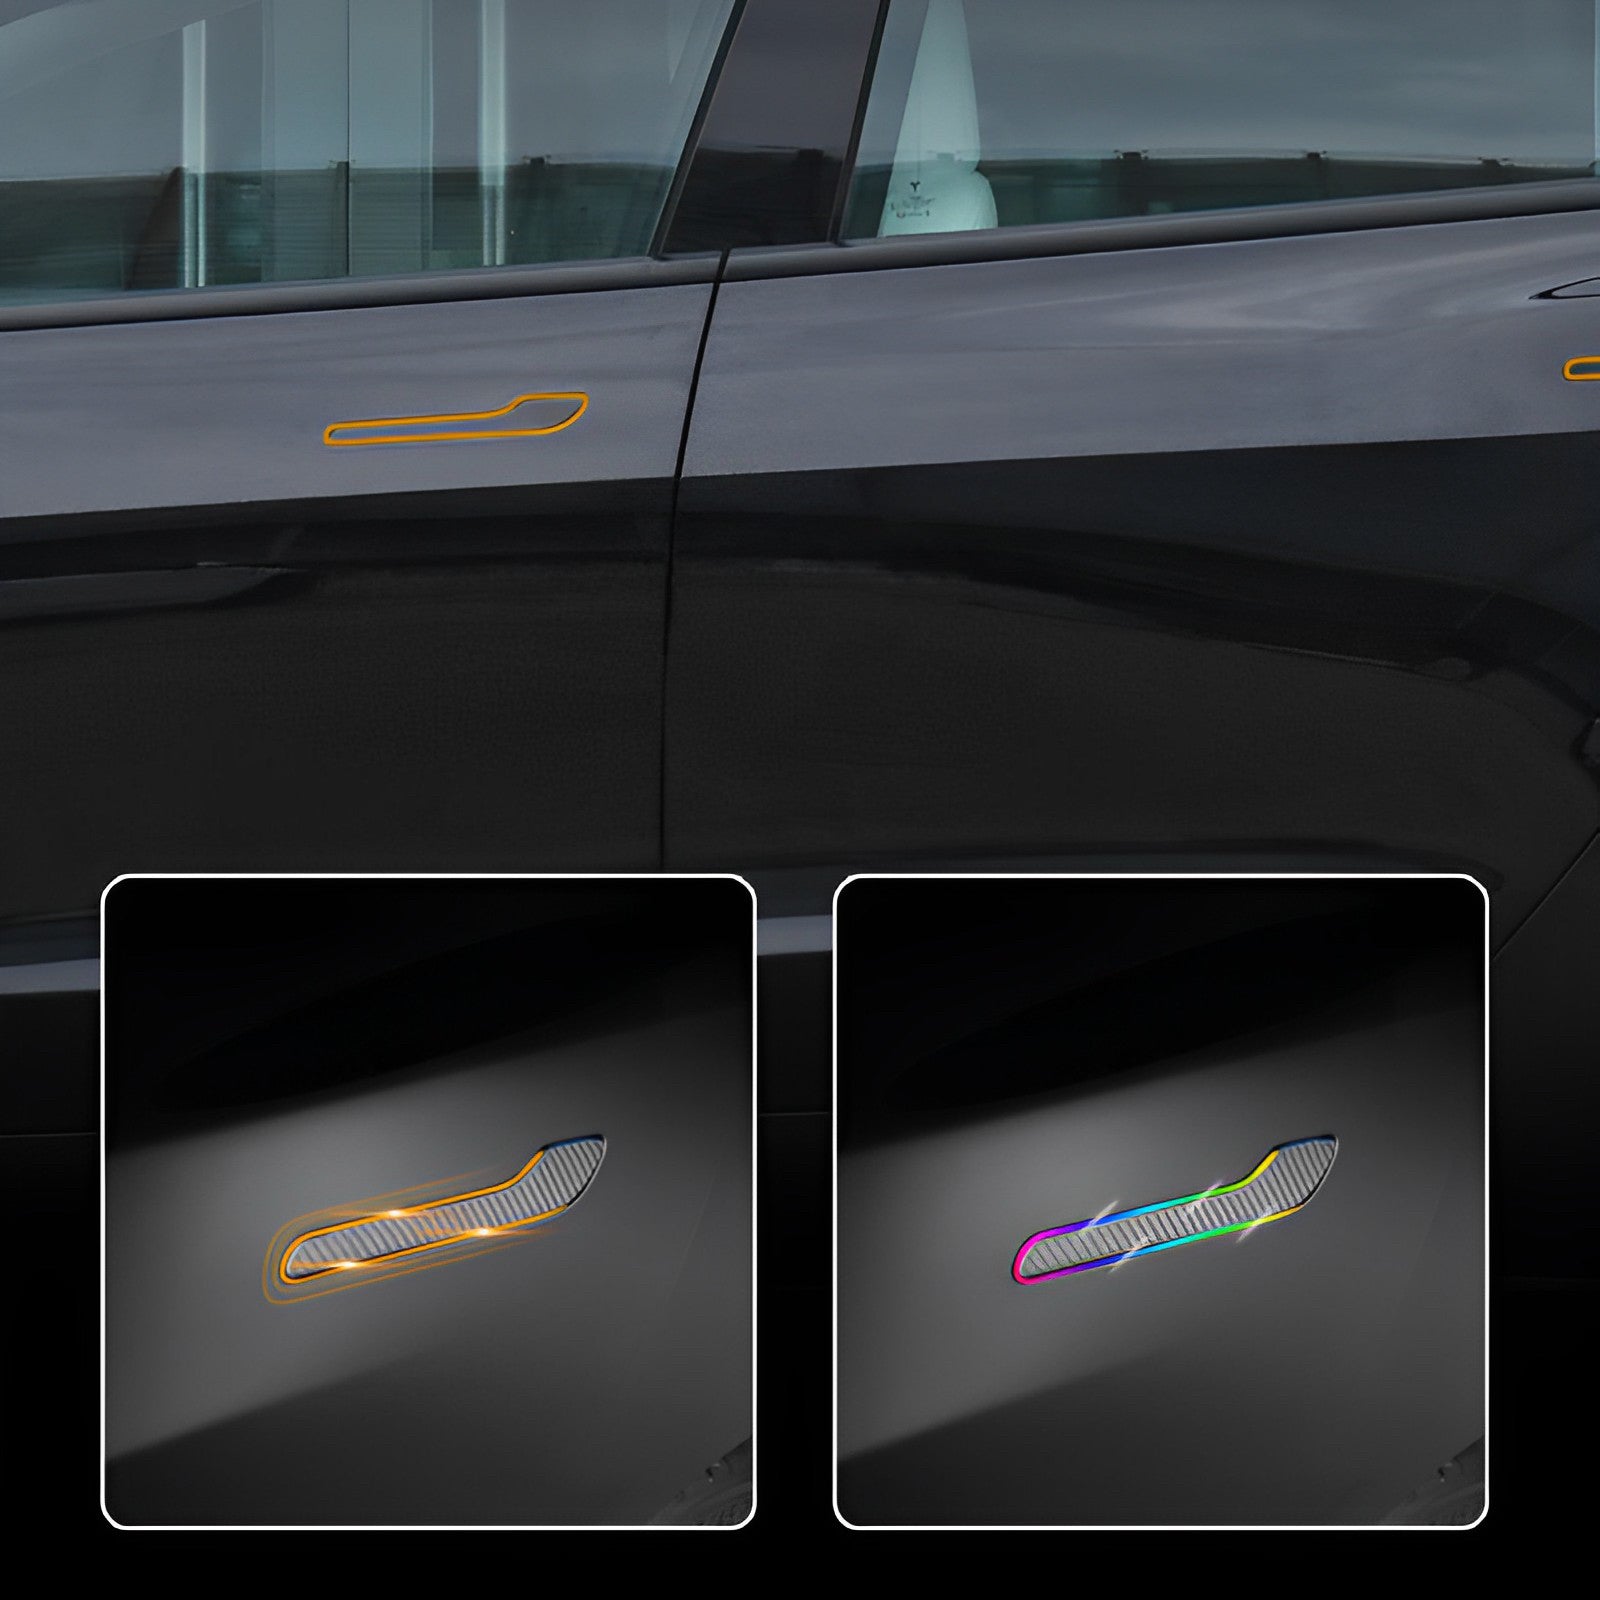 Poignées de porte rétractables électriquement - gadget cool sur la voiture!